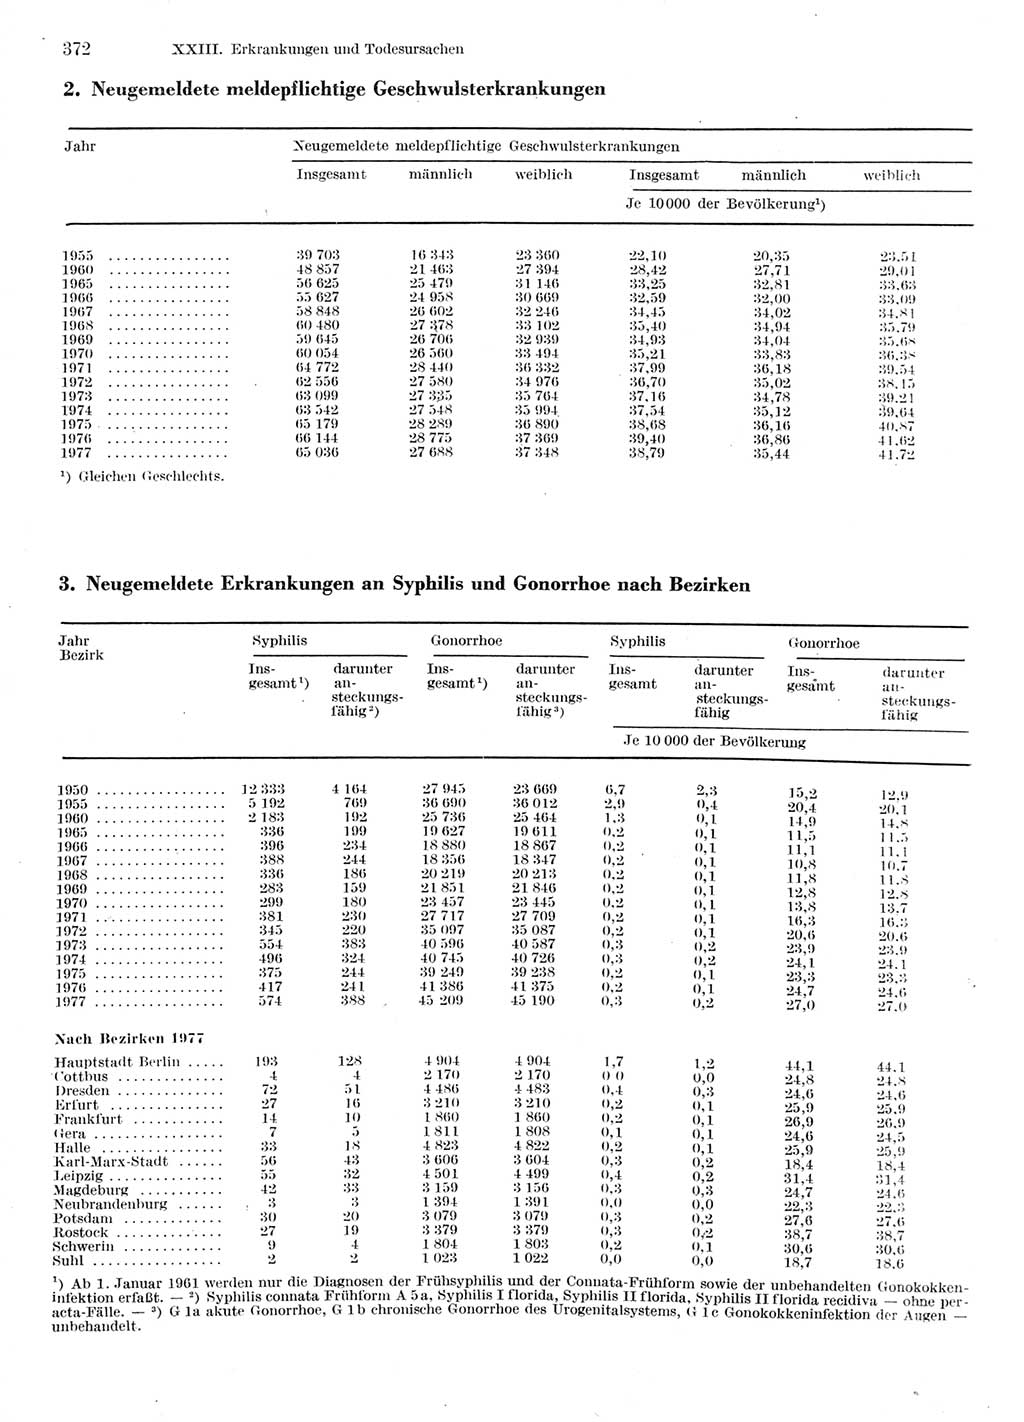 Statistisches Jahrbuch der Deutschen Demokratischen Republik (DDR) 1978, Seite 372 (Stat. Jb. DDR 1978, S. 372)